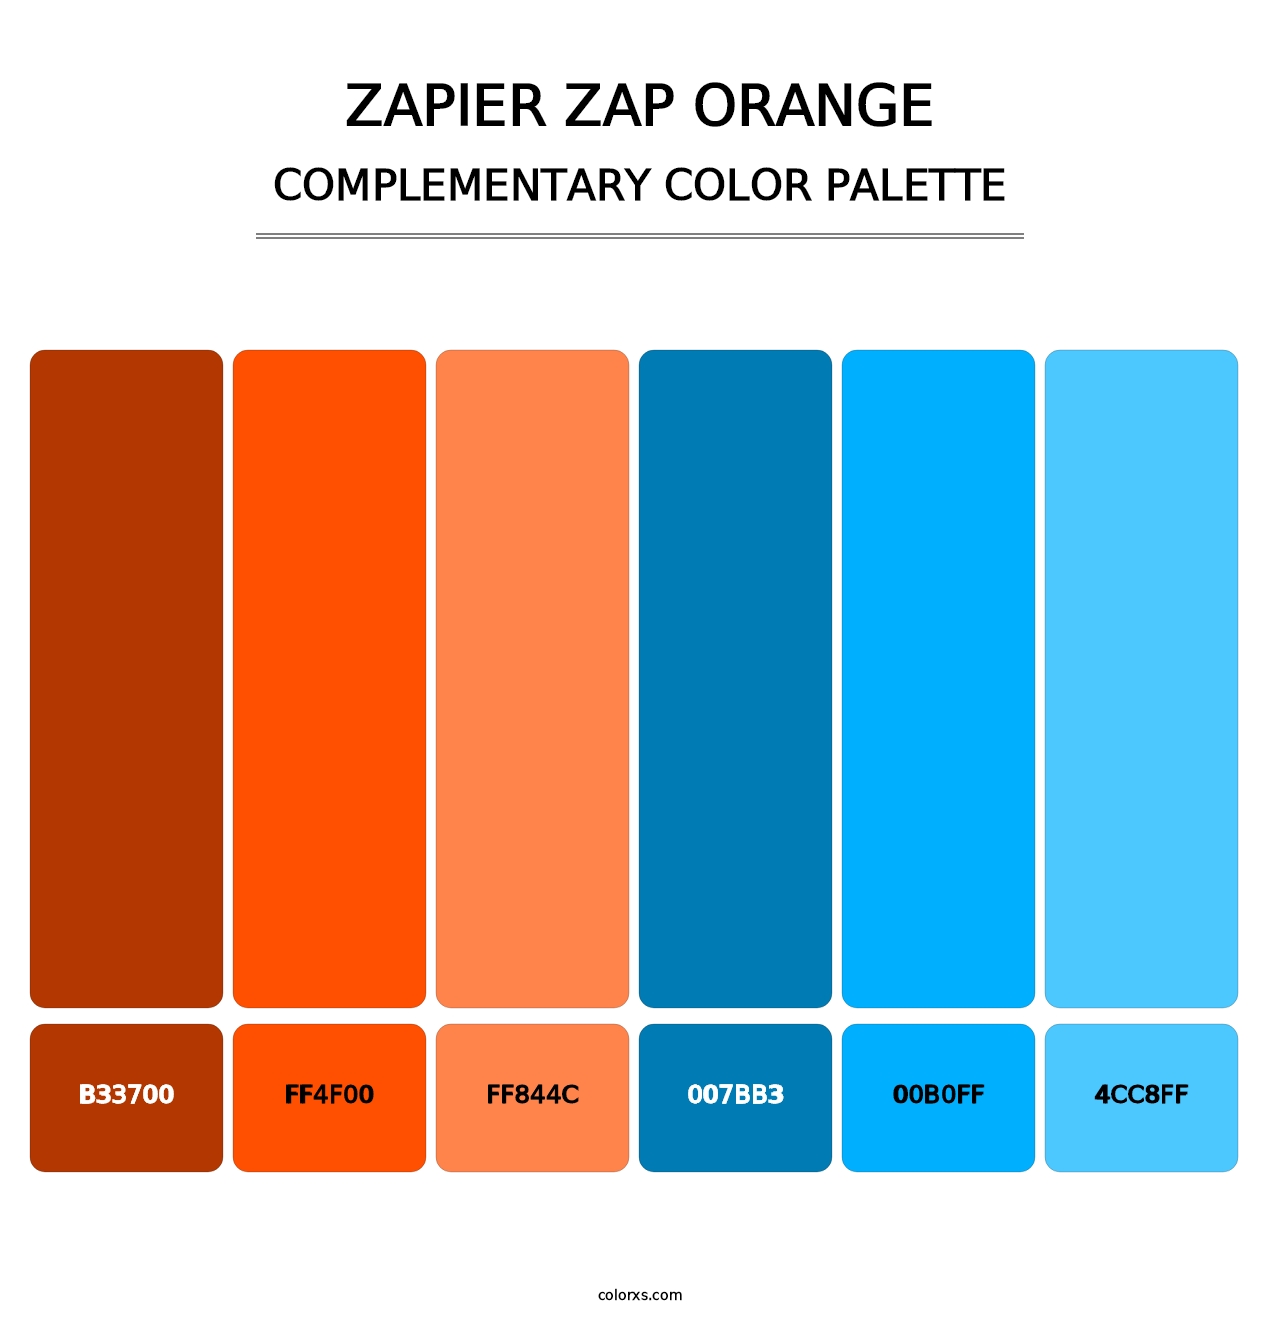 Zapier Zap Orange - Complementary Color Palette